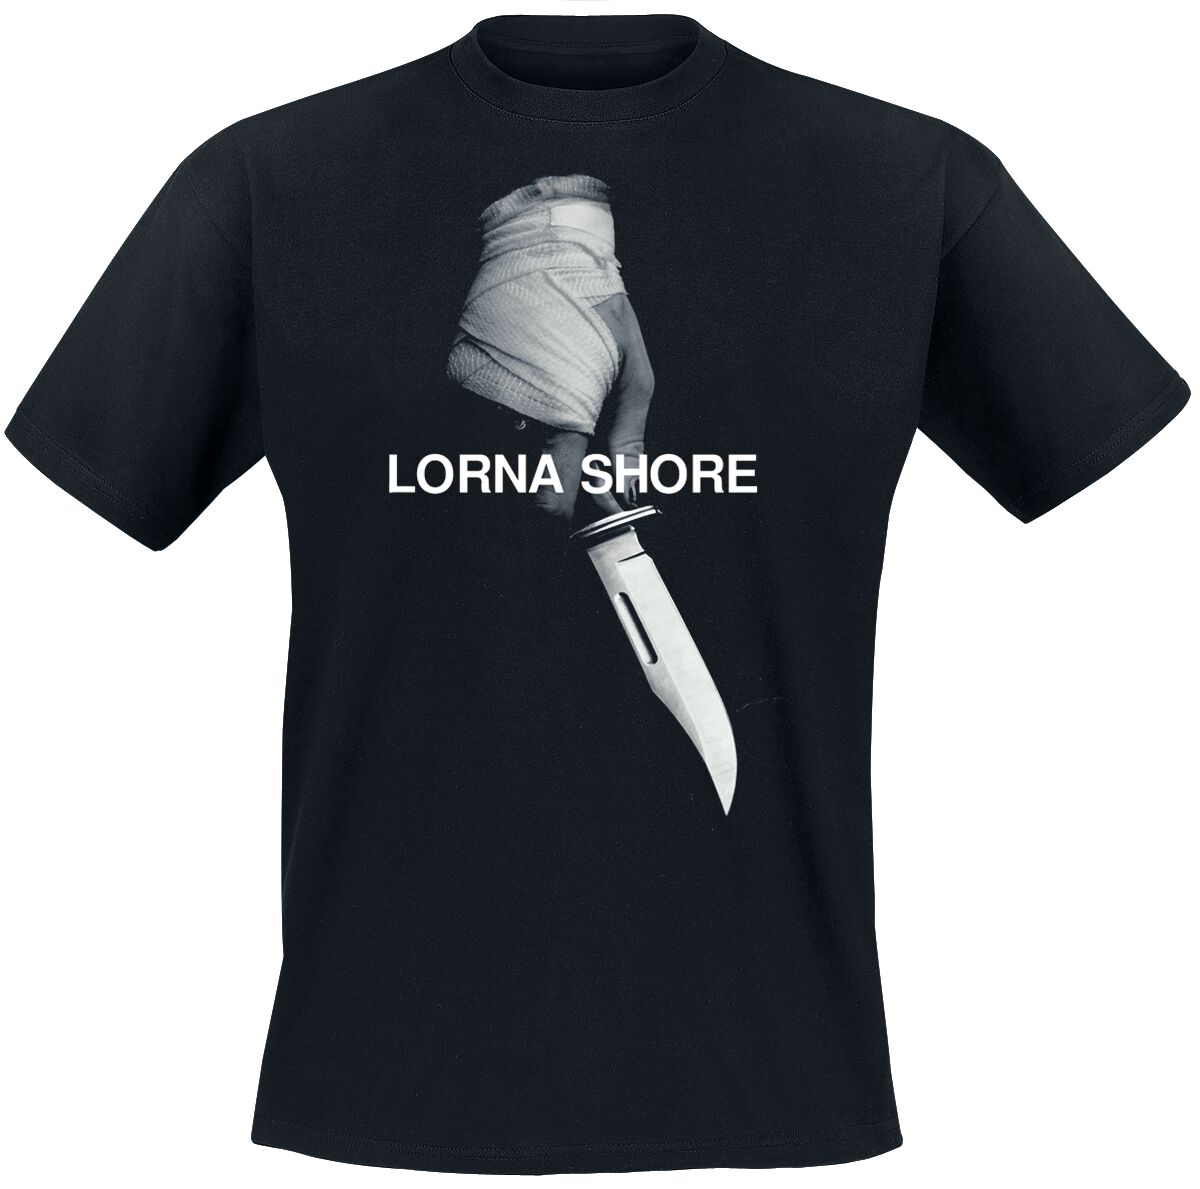 Lorna Shore T-Shirt - Pain remains - S bis XXL - für Männer - Größe M - schwarz  - Lizenziertes Merchandise!